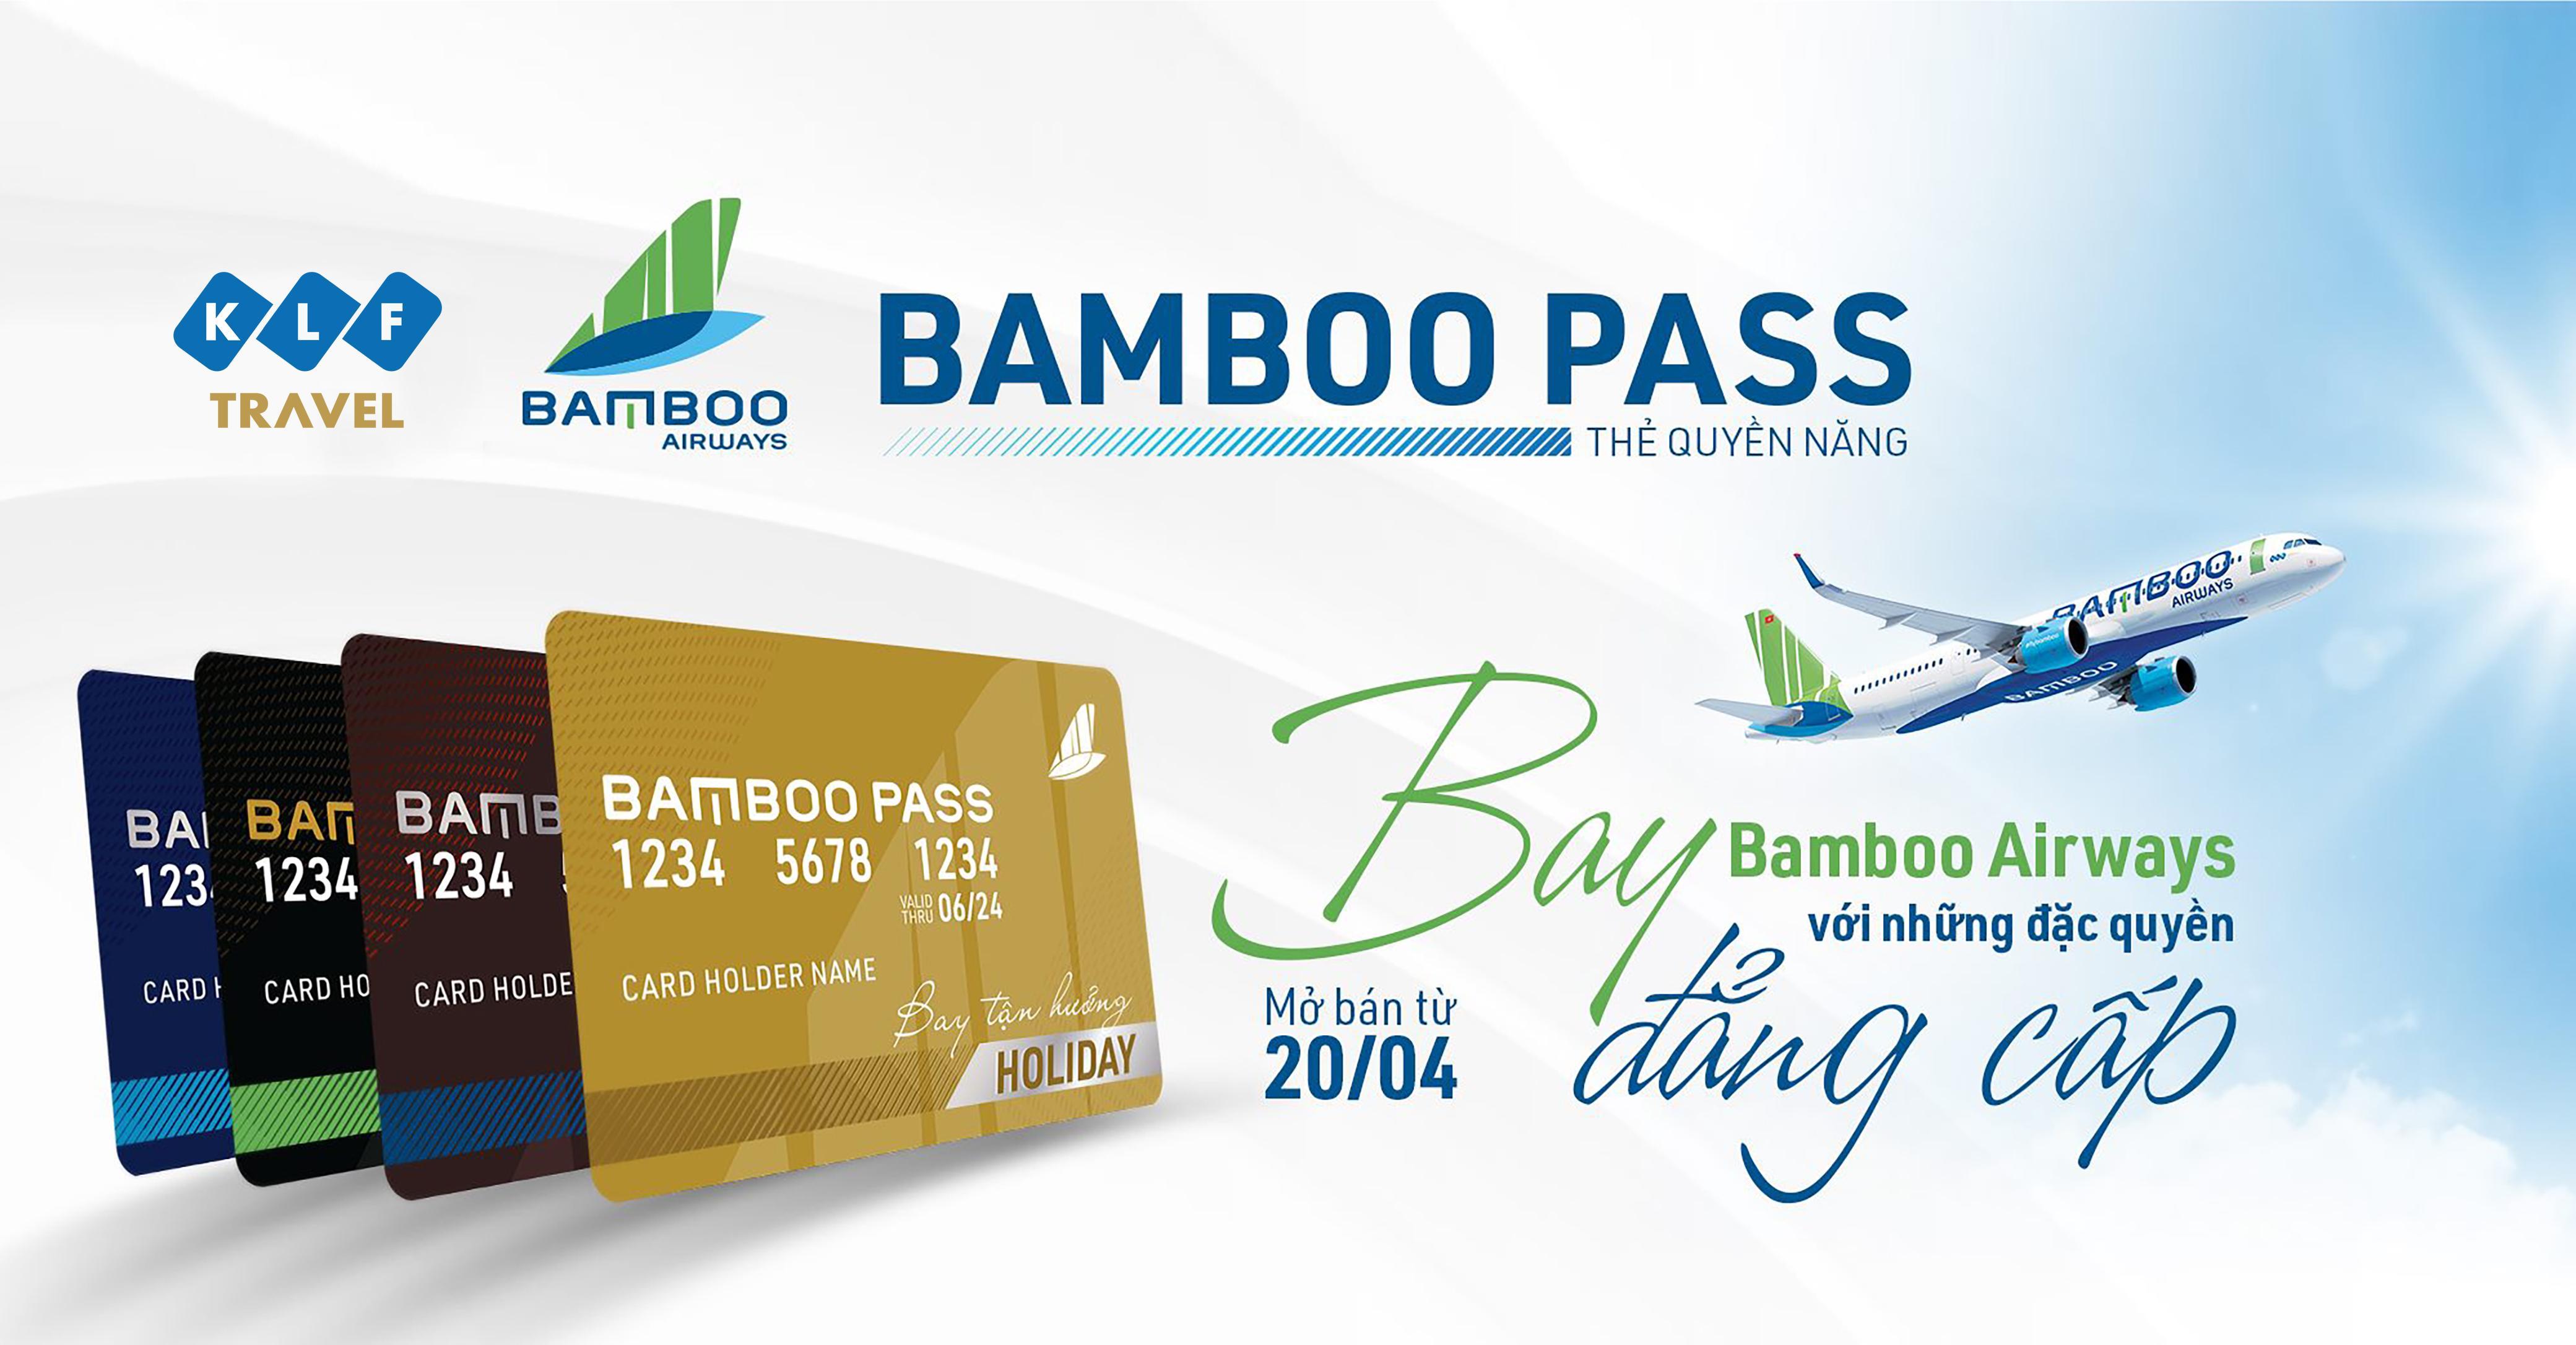 KLF Travel phân phối thẻ bay Bamboo Pass tới mọi khách hàng